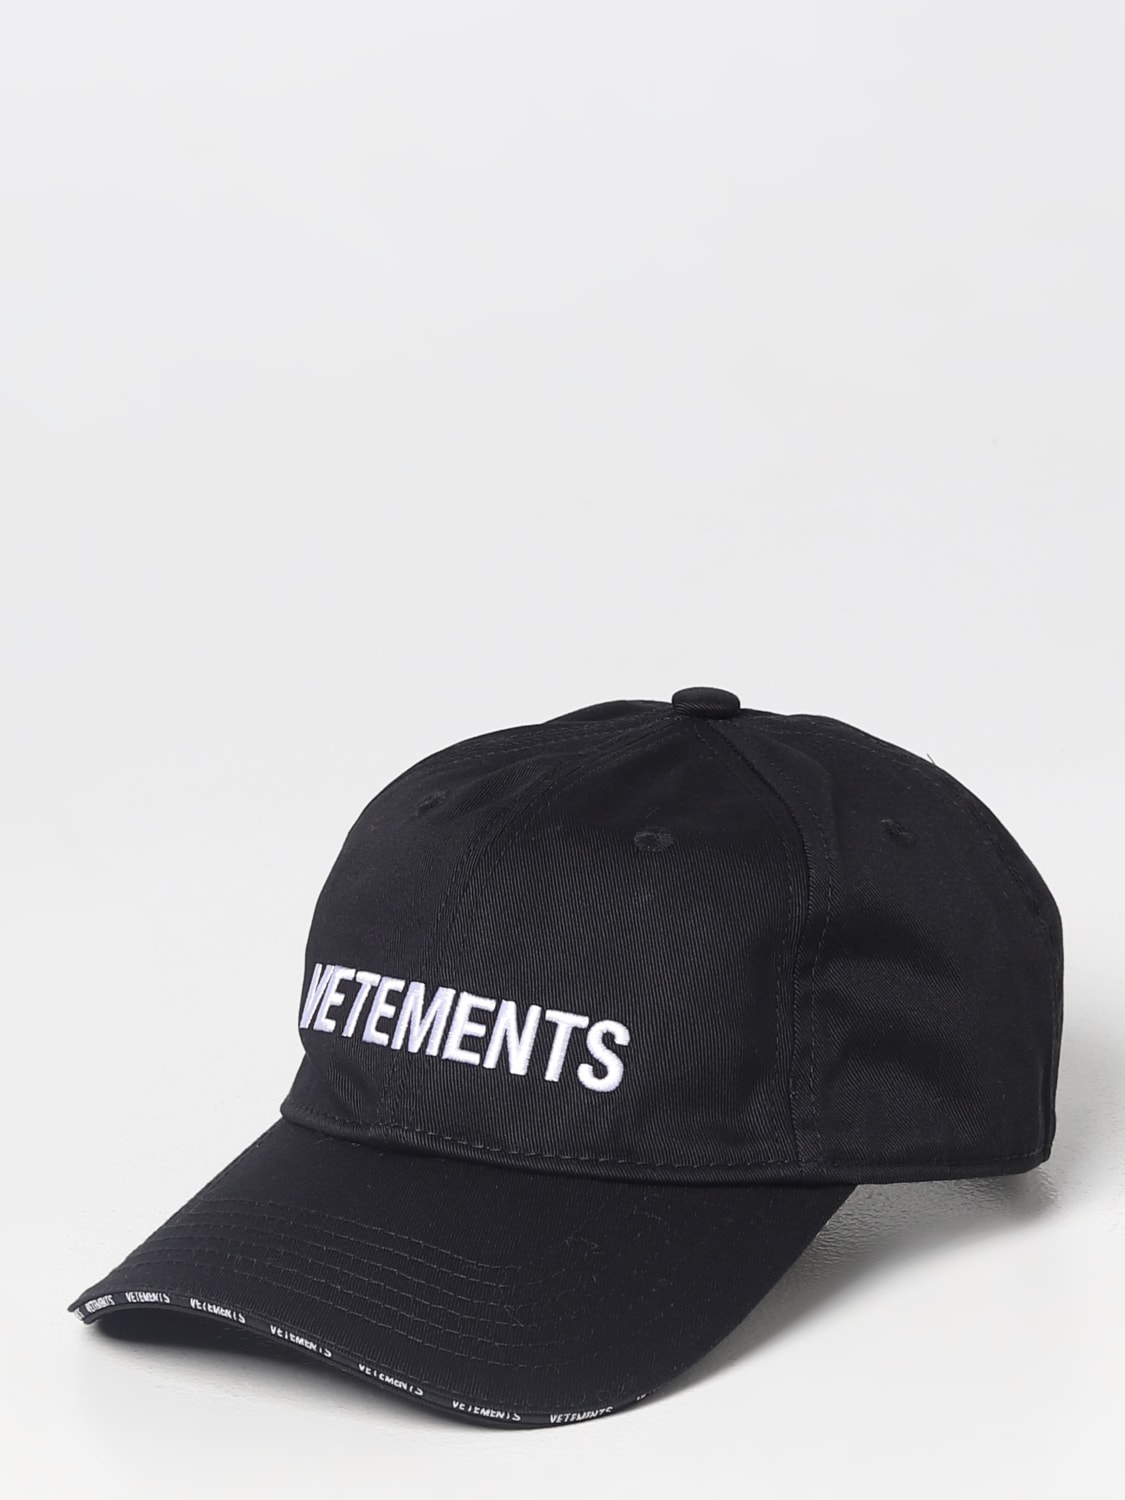 新規開店vetements cap black 帽子